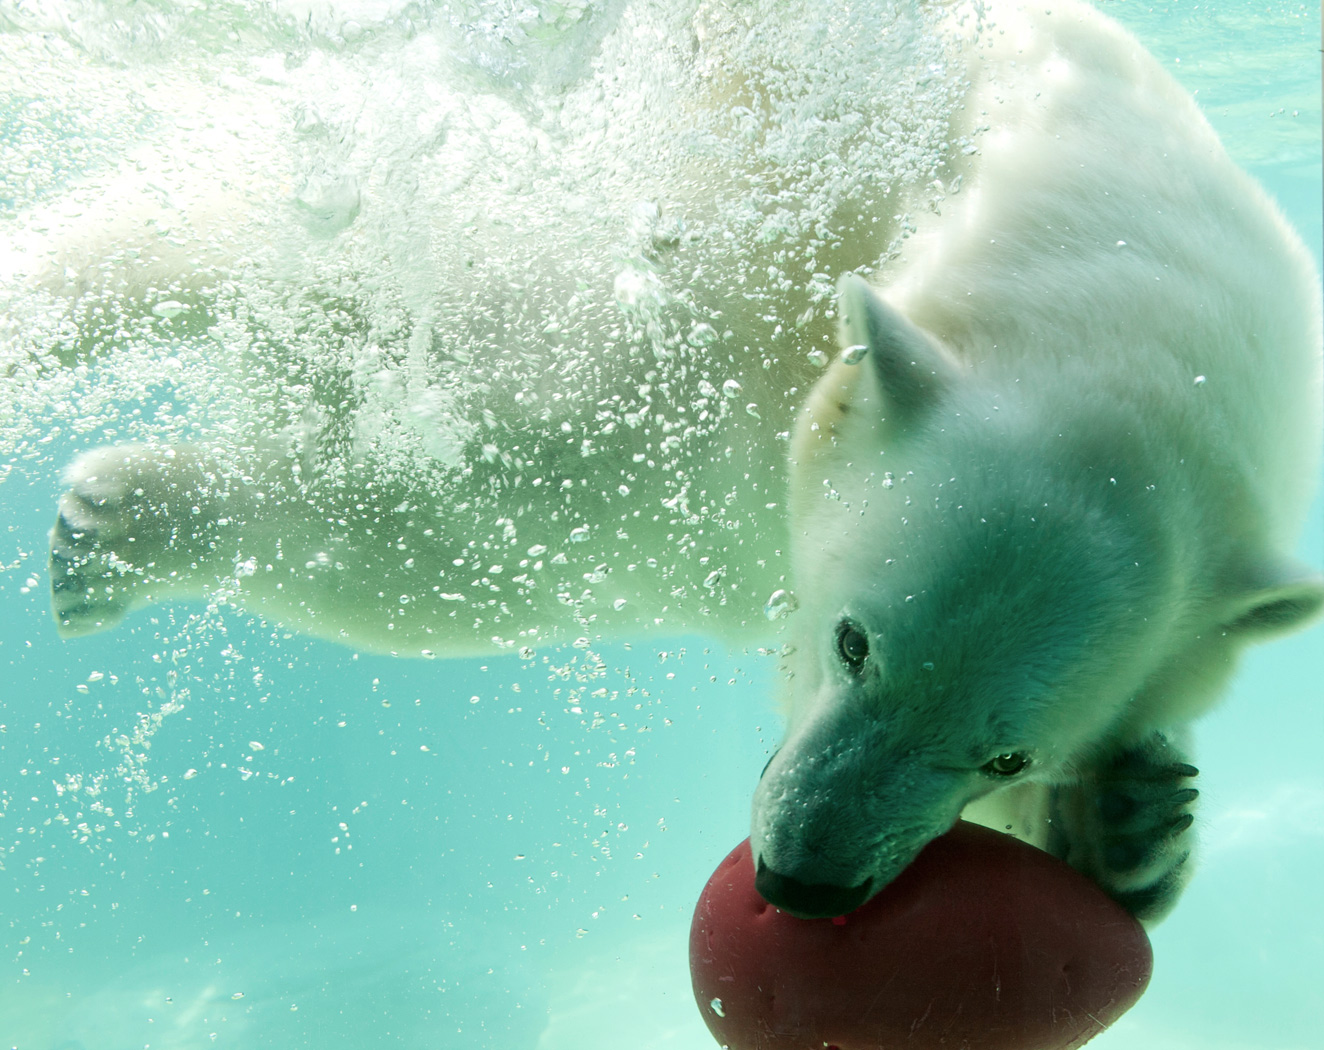 Ein Eisbär spielt vergnügt im Wasser